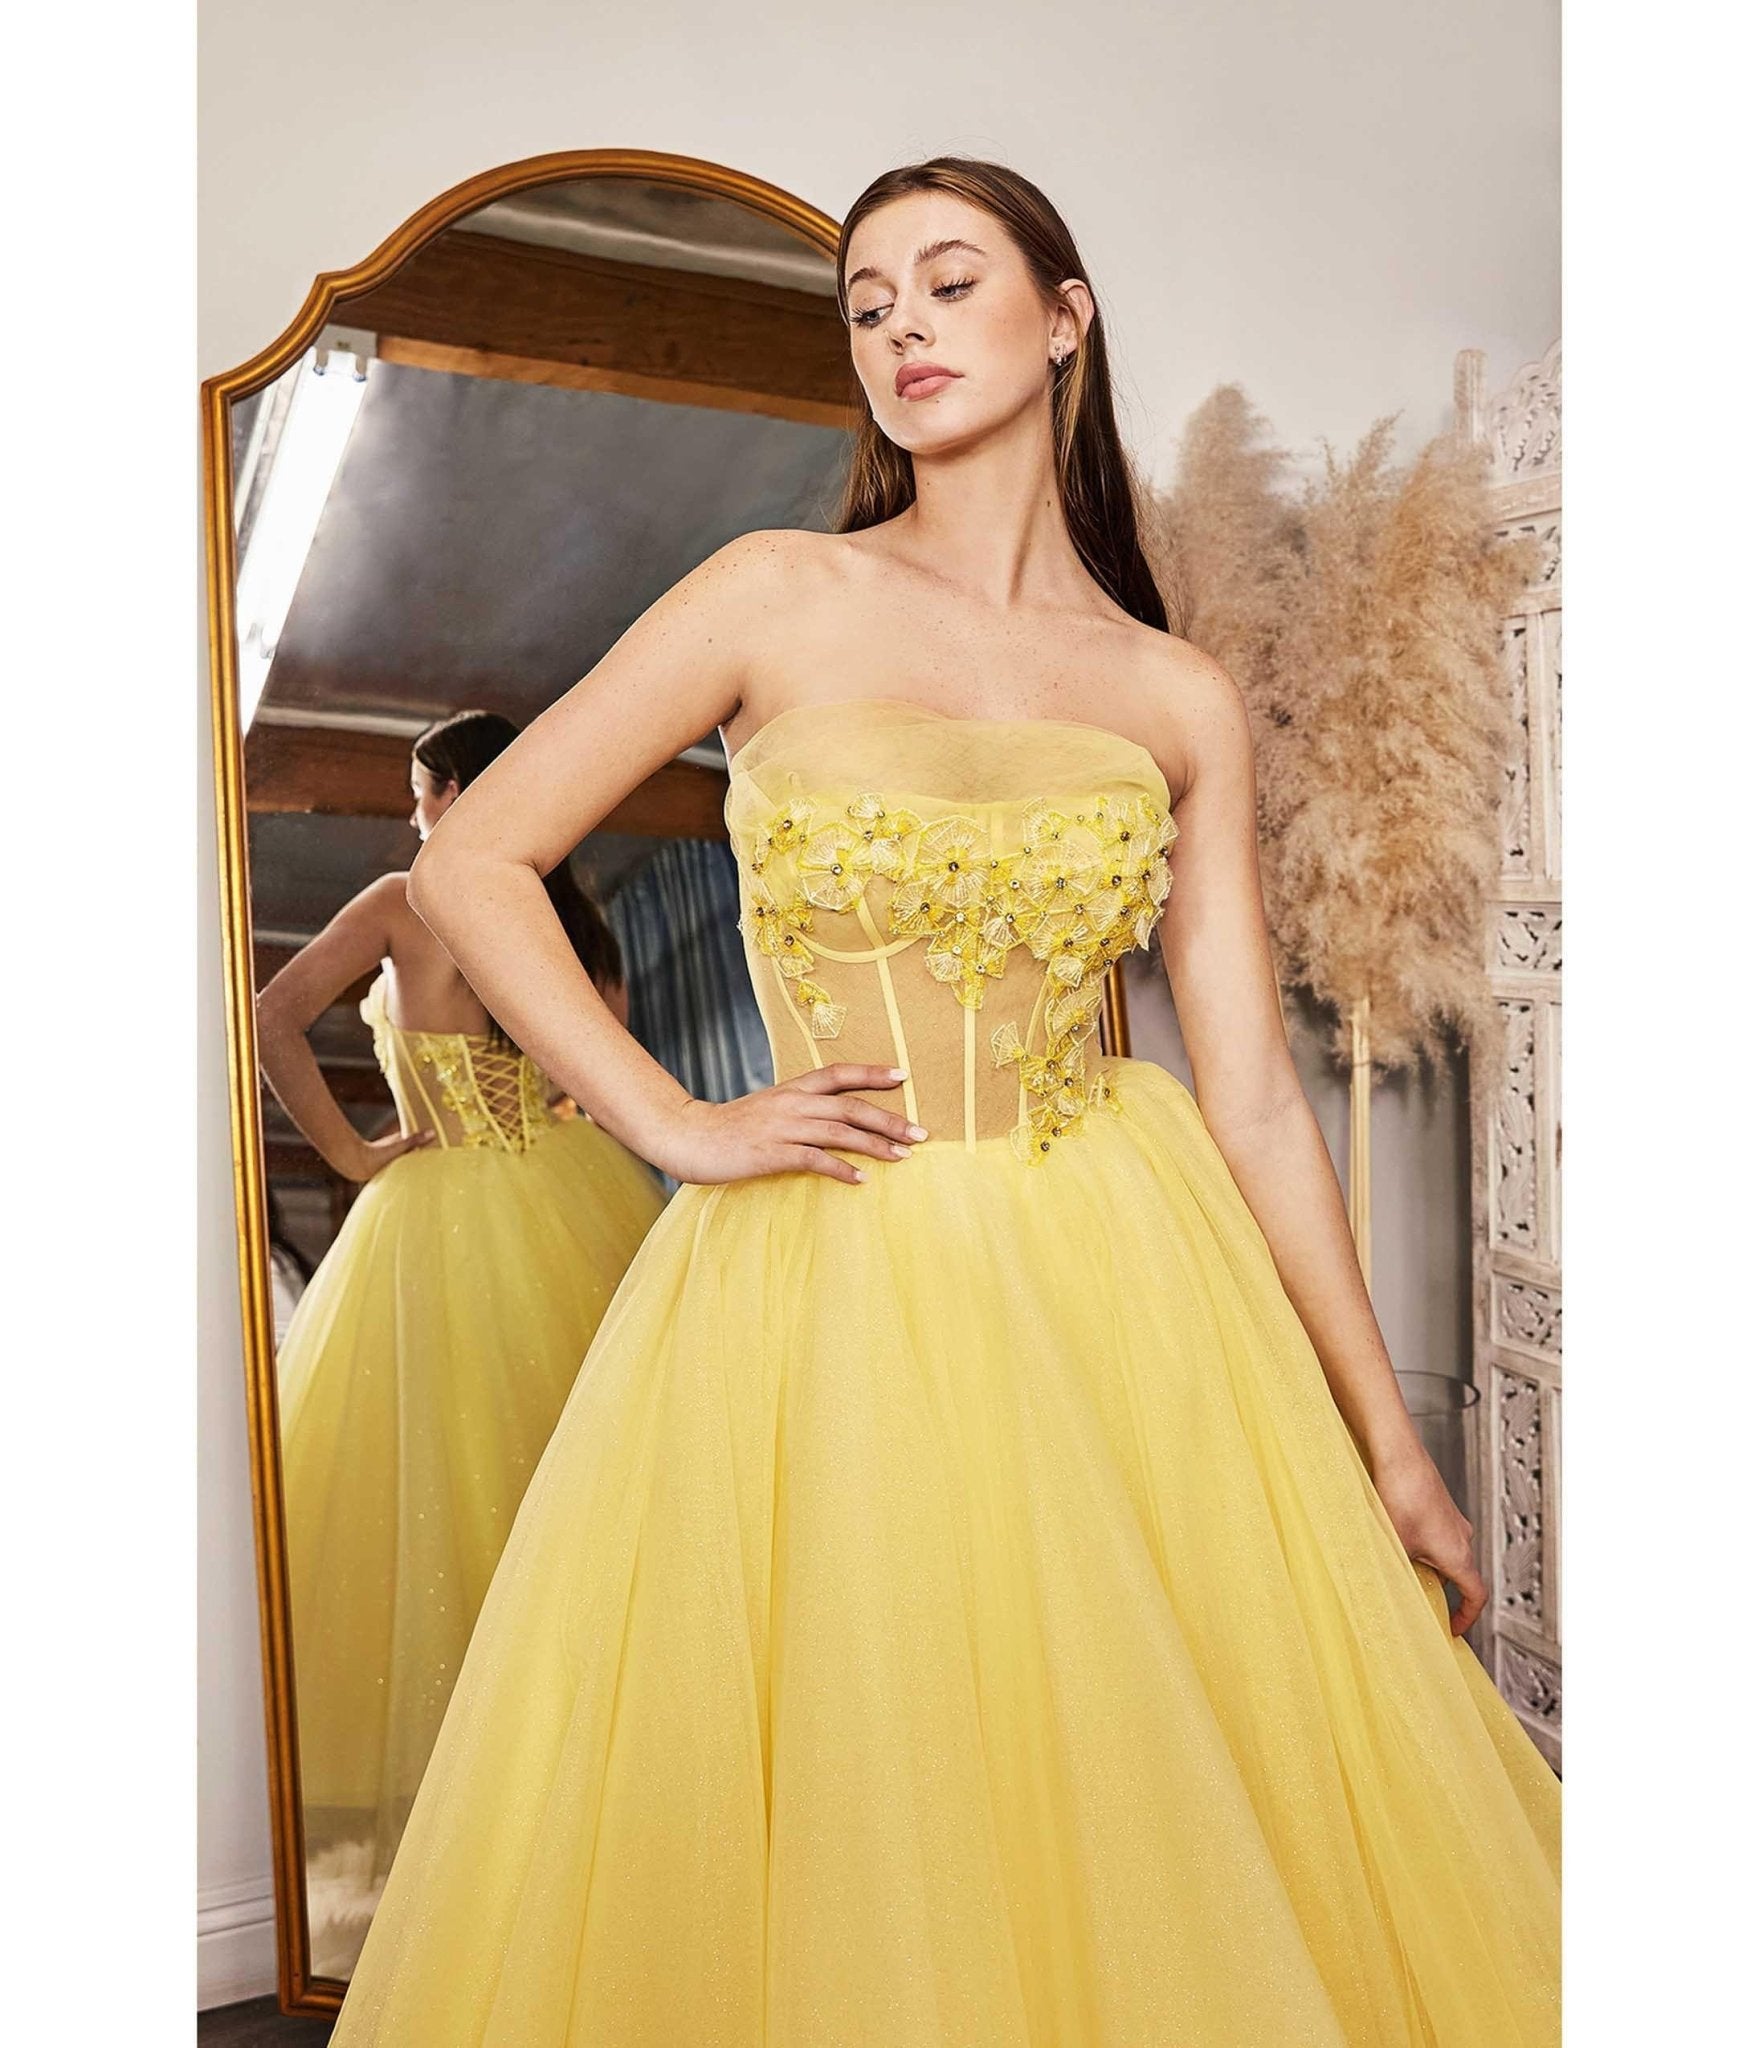 yellow chiffon dress